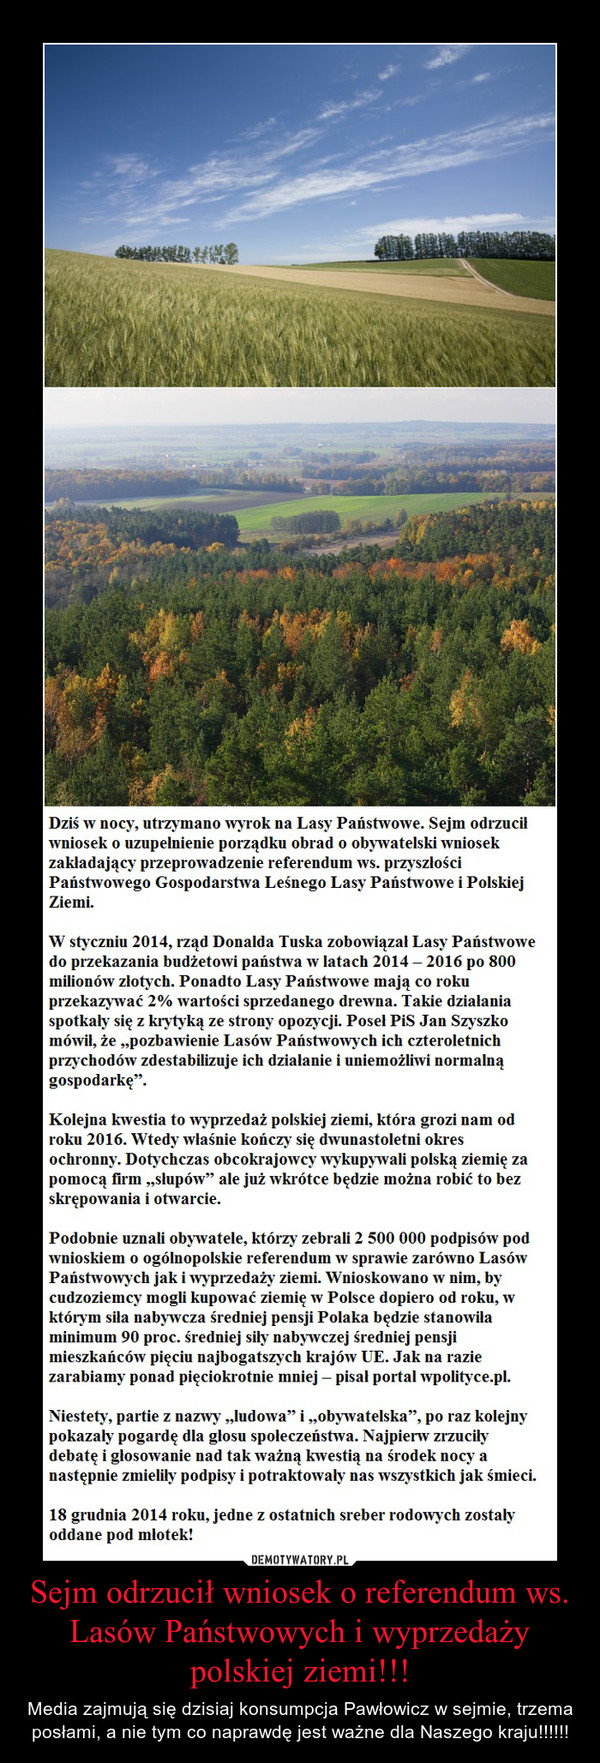 Sejm odrzucił wniosek o referendum ws. Lasów Państwowych i wyprzedaży polskiej ziemi!!! – Media zajmują się dzisiaj konsumpcja Pawłowicz w sejmie, trzema posłami, a nie tym co naprawdę jest ważne dla Naszego kraju!!!!!! 